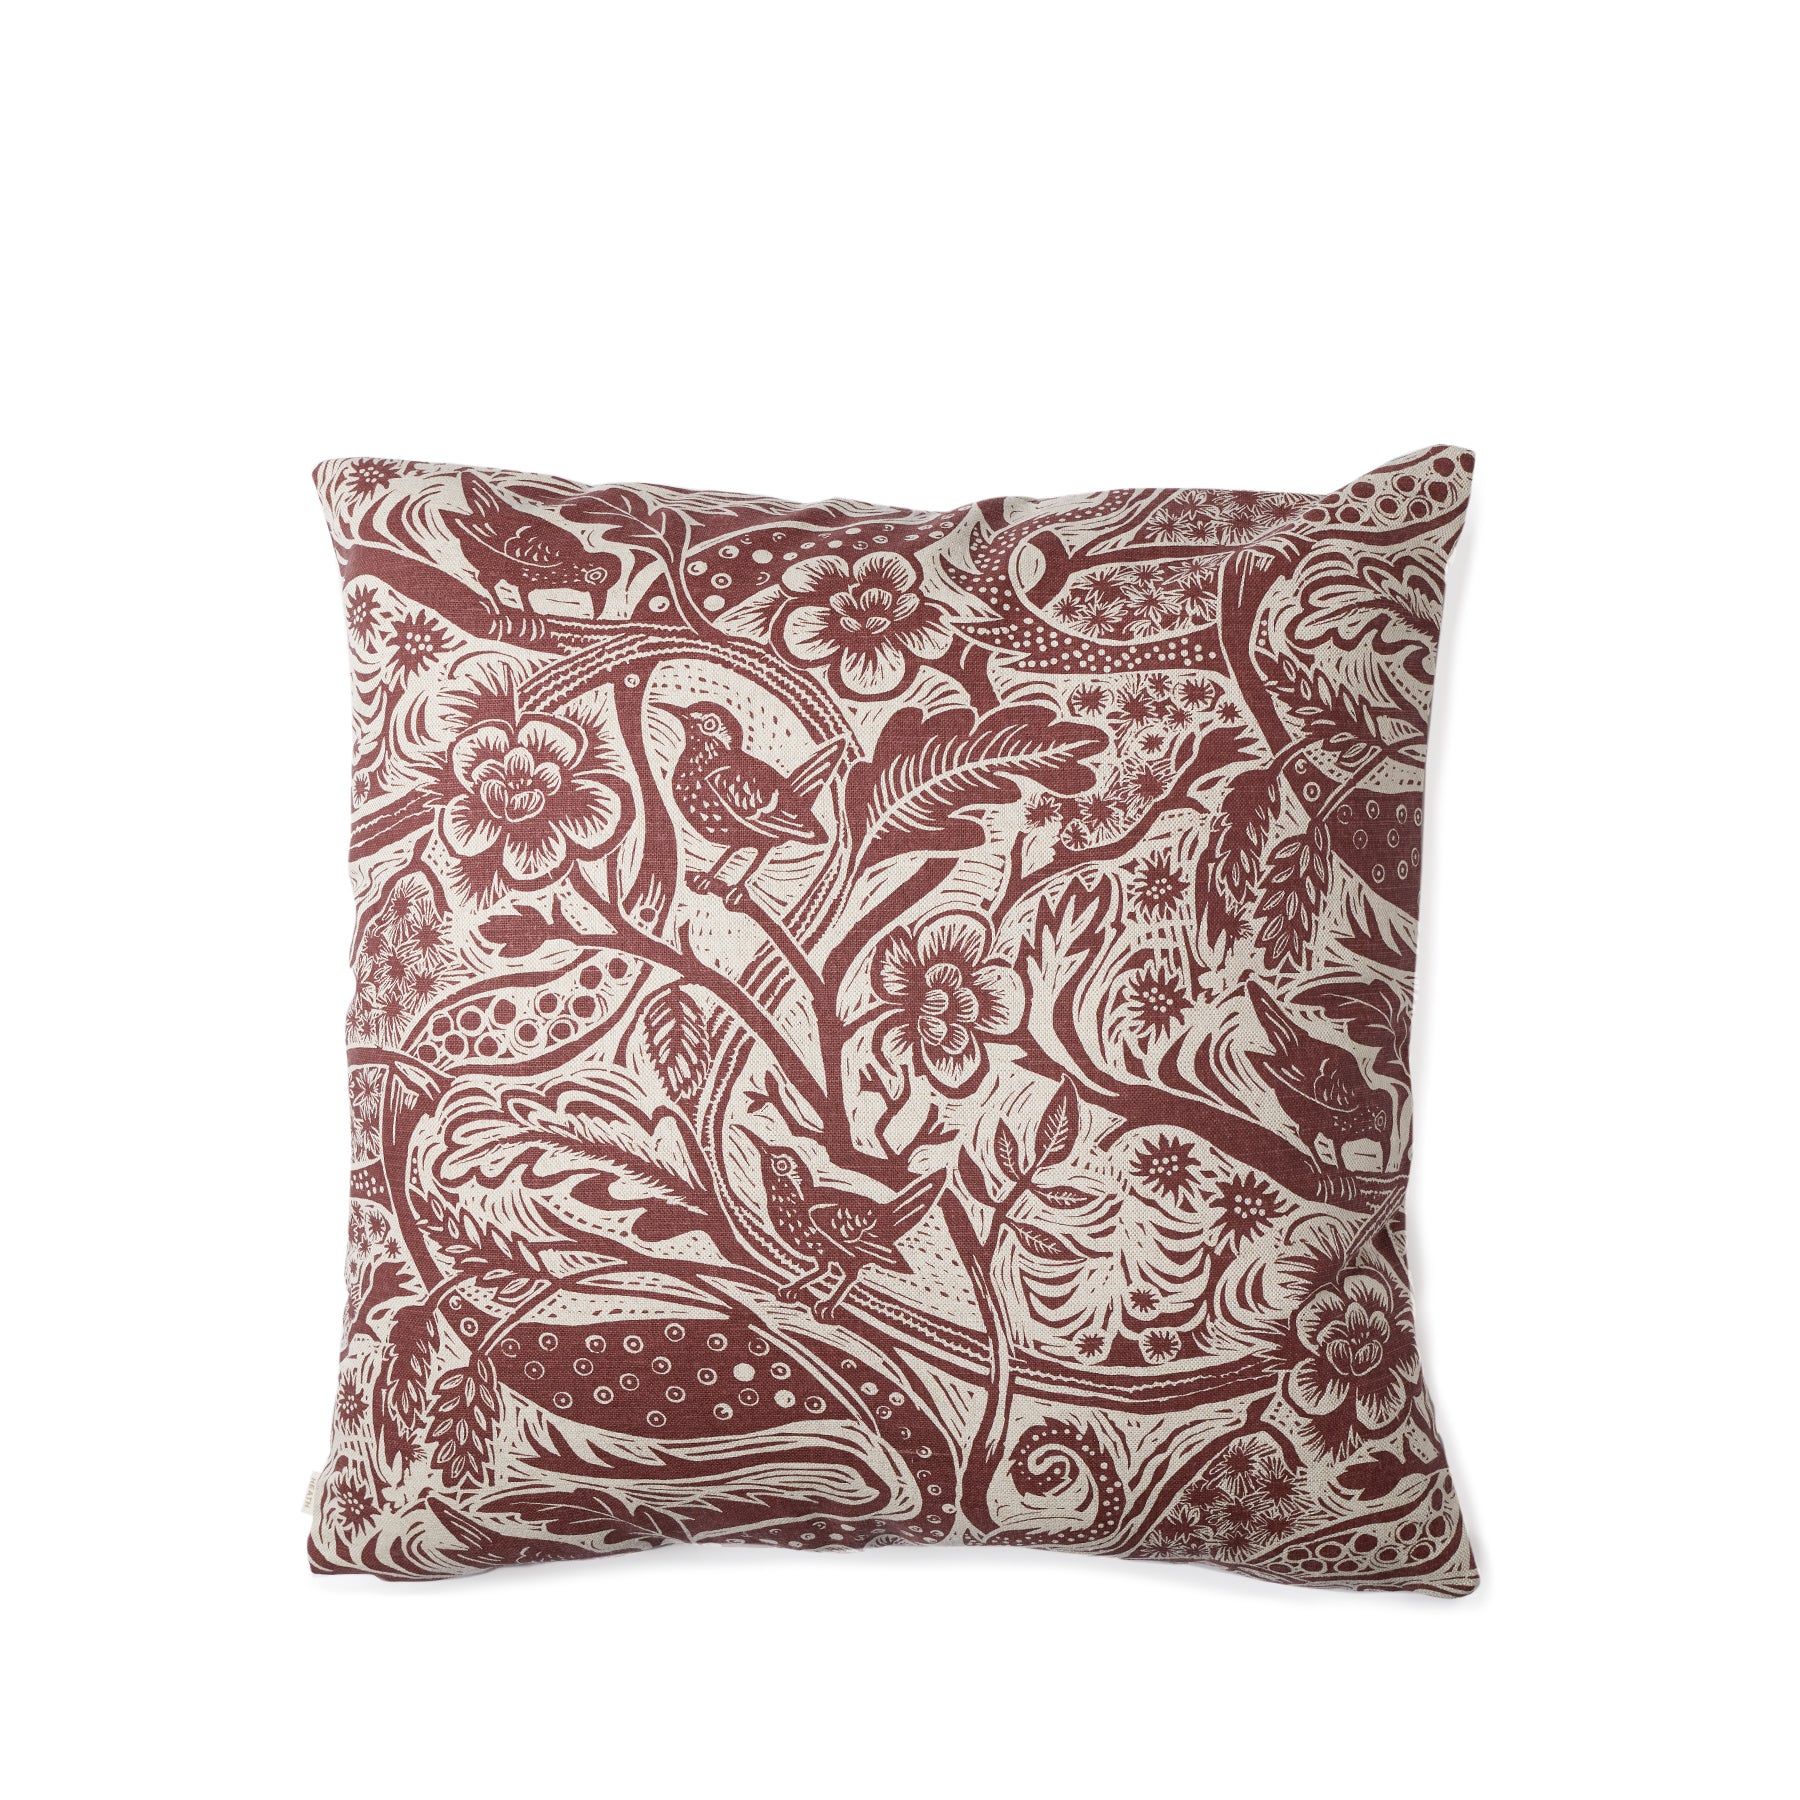 Wren Pillow in Burgundy Zoom Image 1